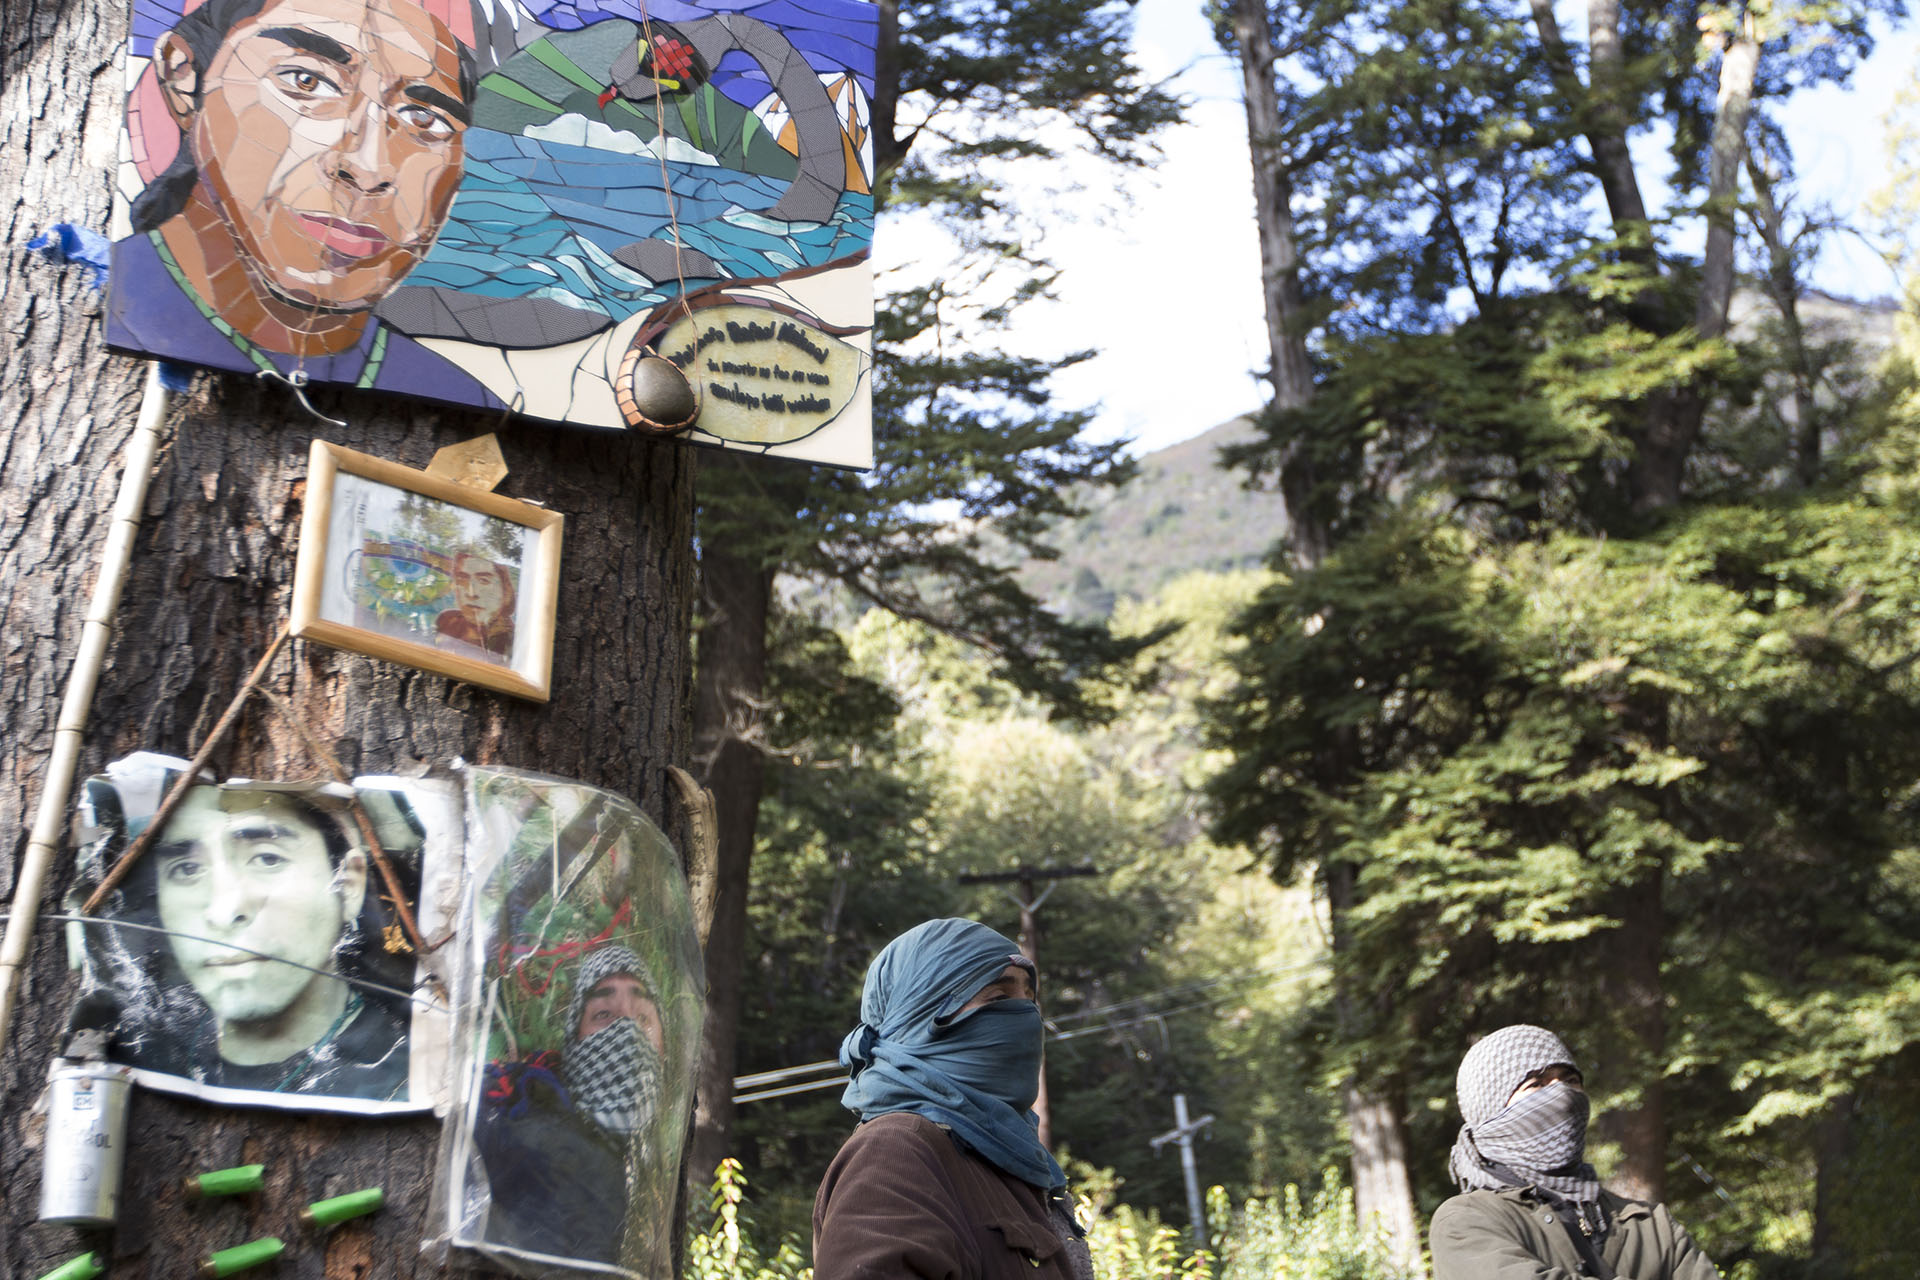 La comunidad mapuche Lafken Winkul Mapu. En el predio hay pancartas y afiches de Rafael Nahuel